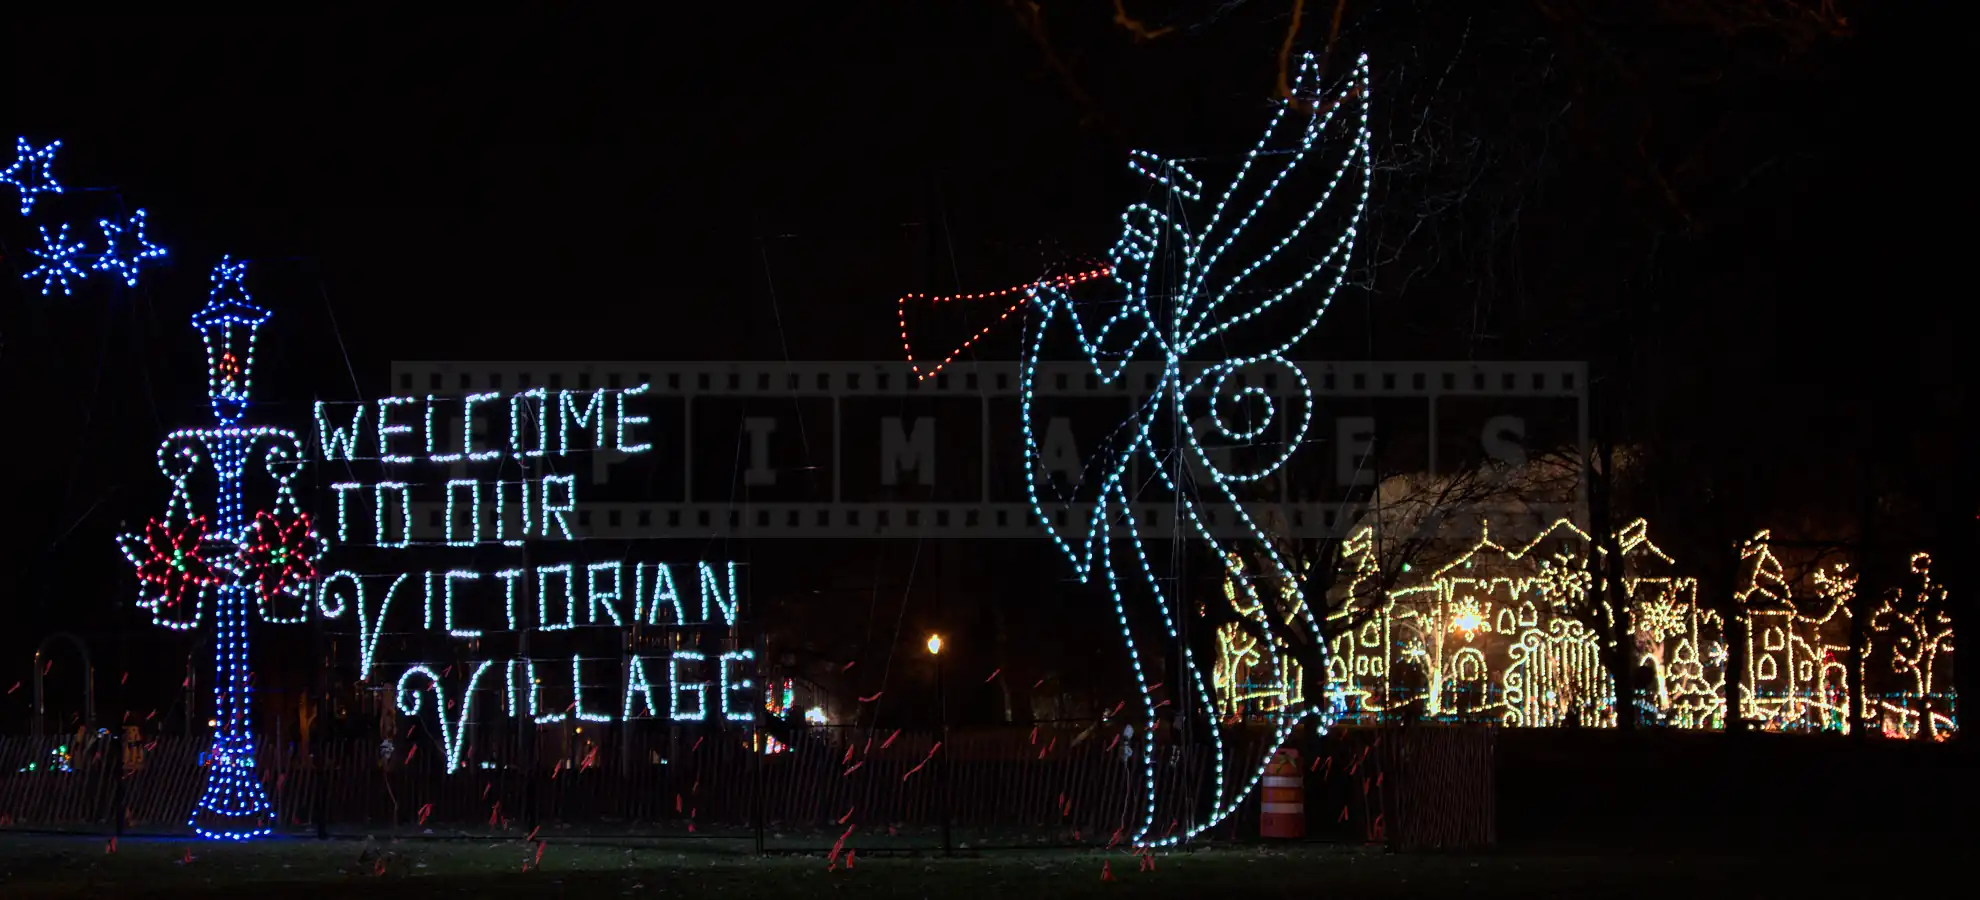 xmas lights angel inviting to victorian village albany, ny